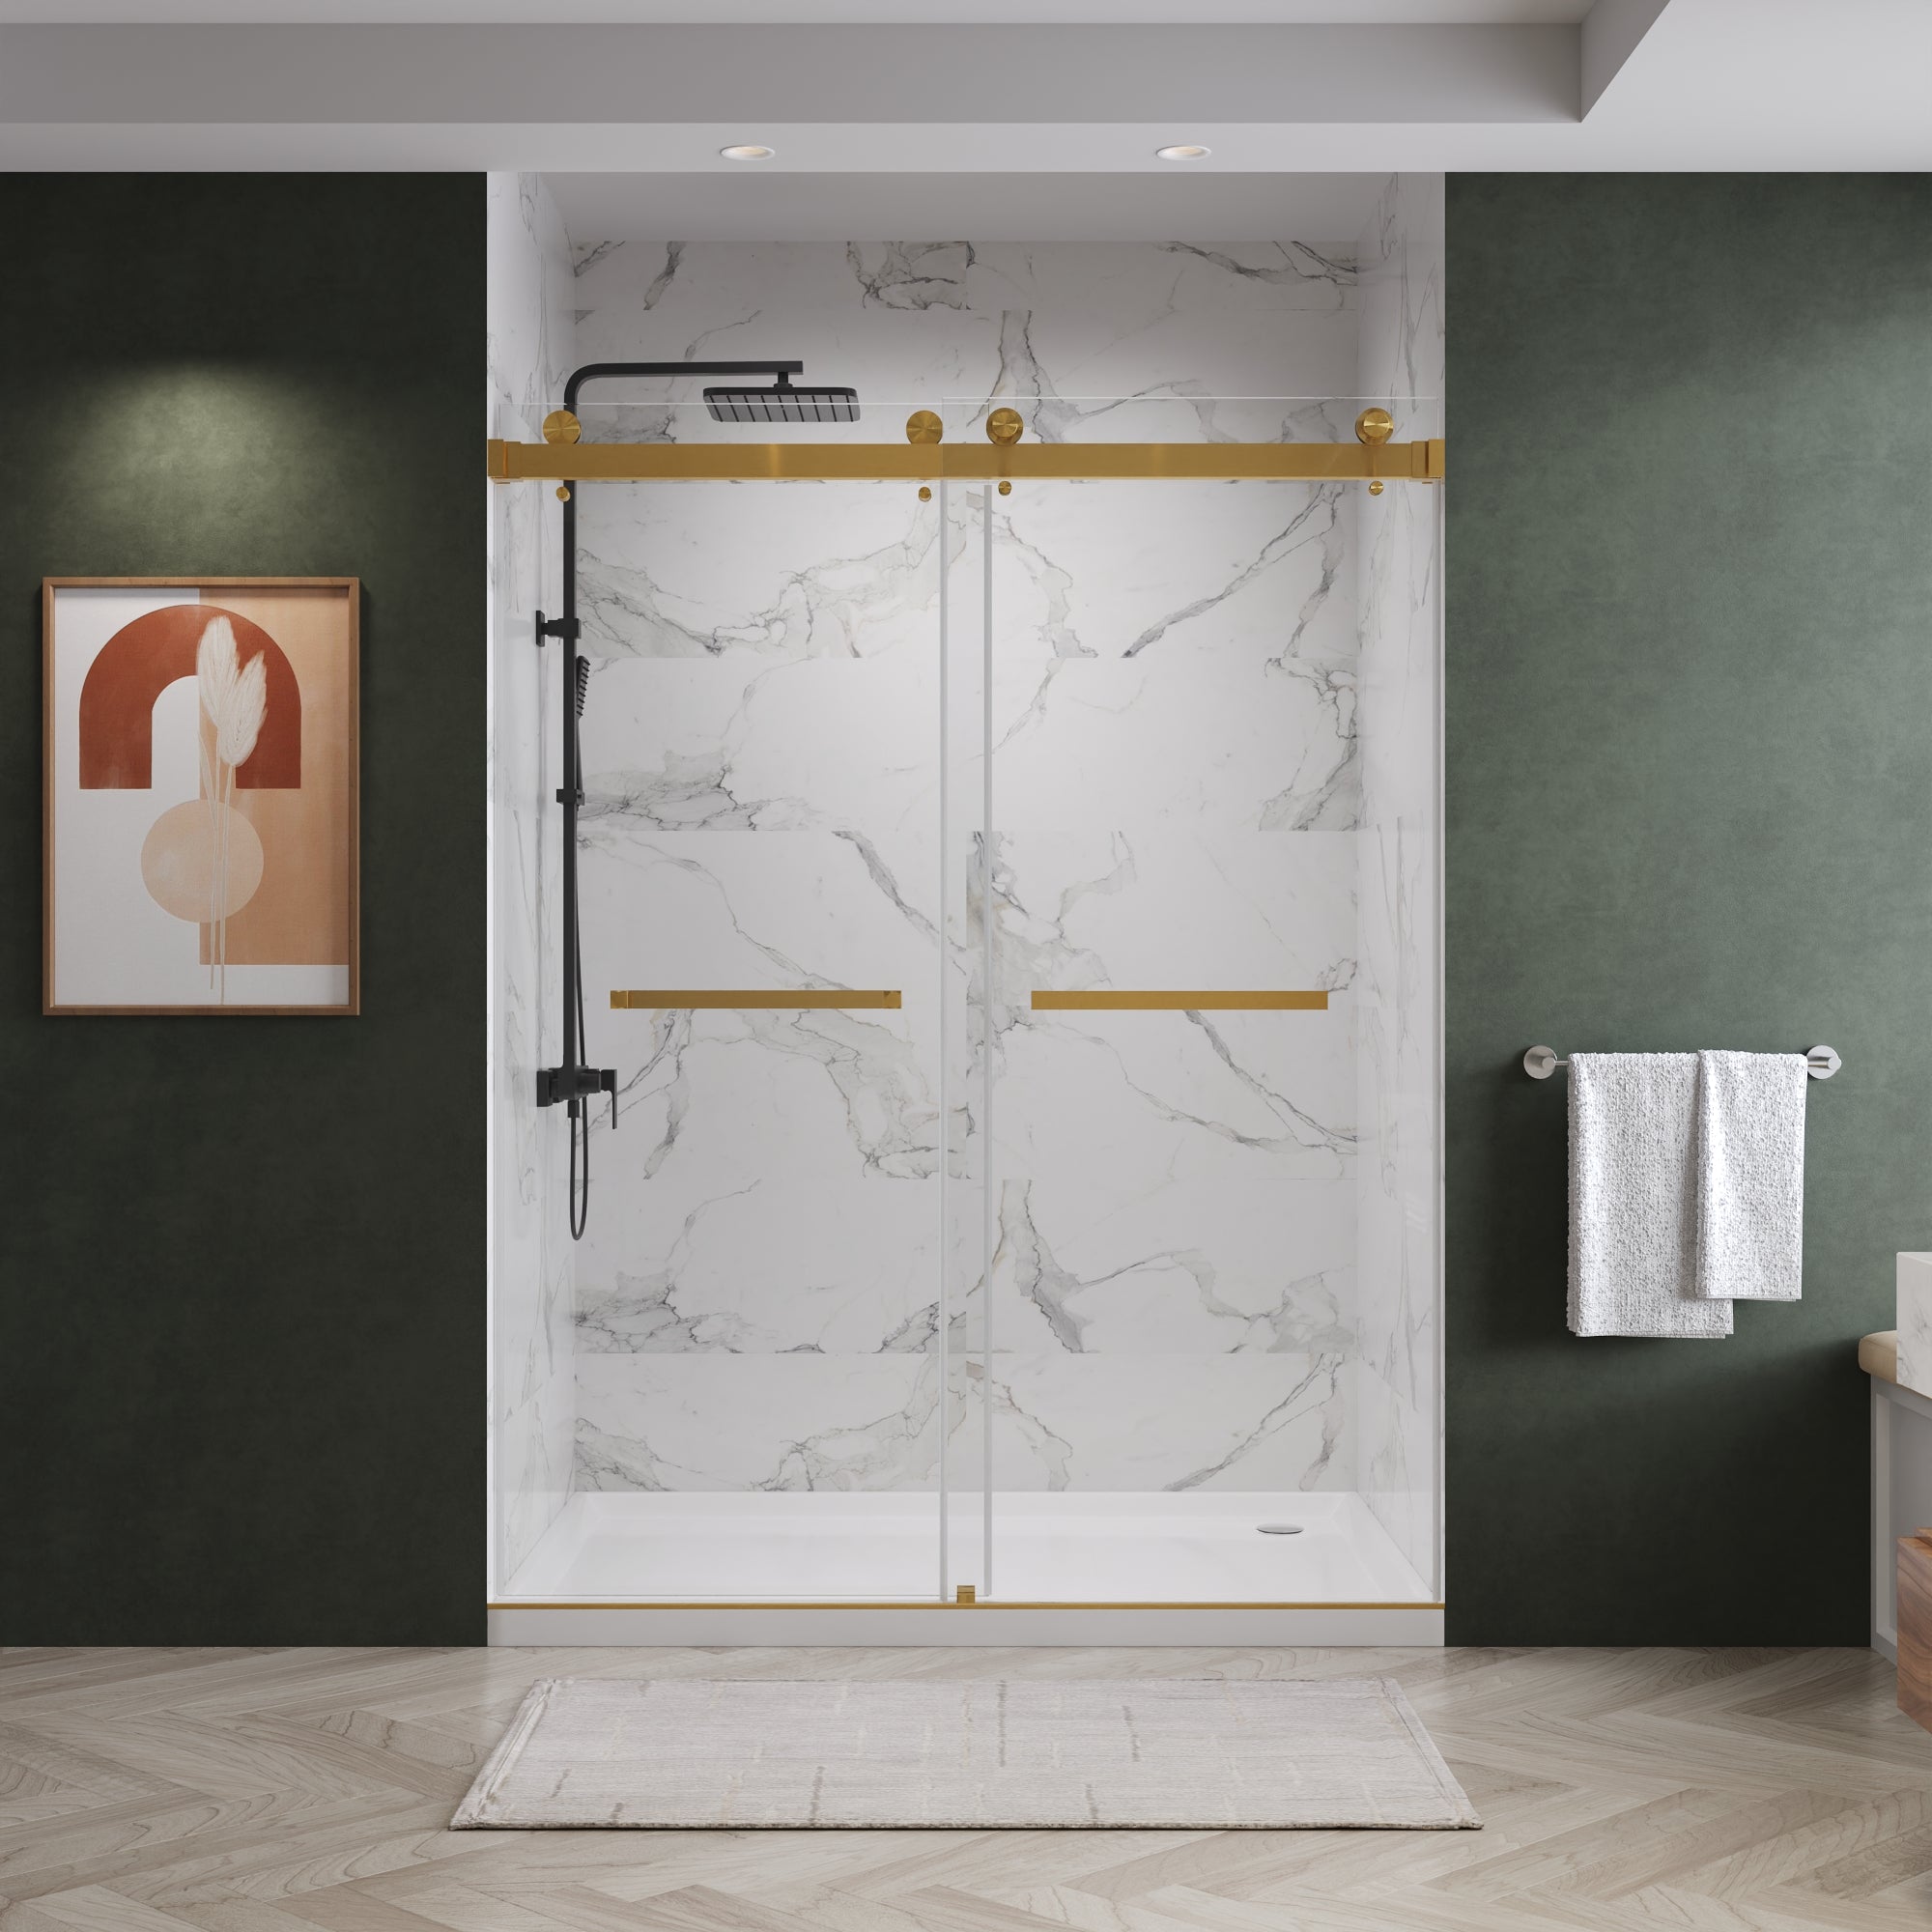 お買い得人気Arizona Shower Door モールガラススライドシャワードア FT5959 GOLD 引違い扉 ラグジュアリ 浴室ドア、引き戸